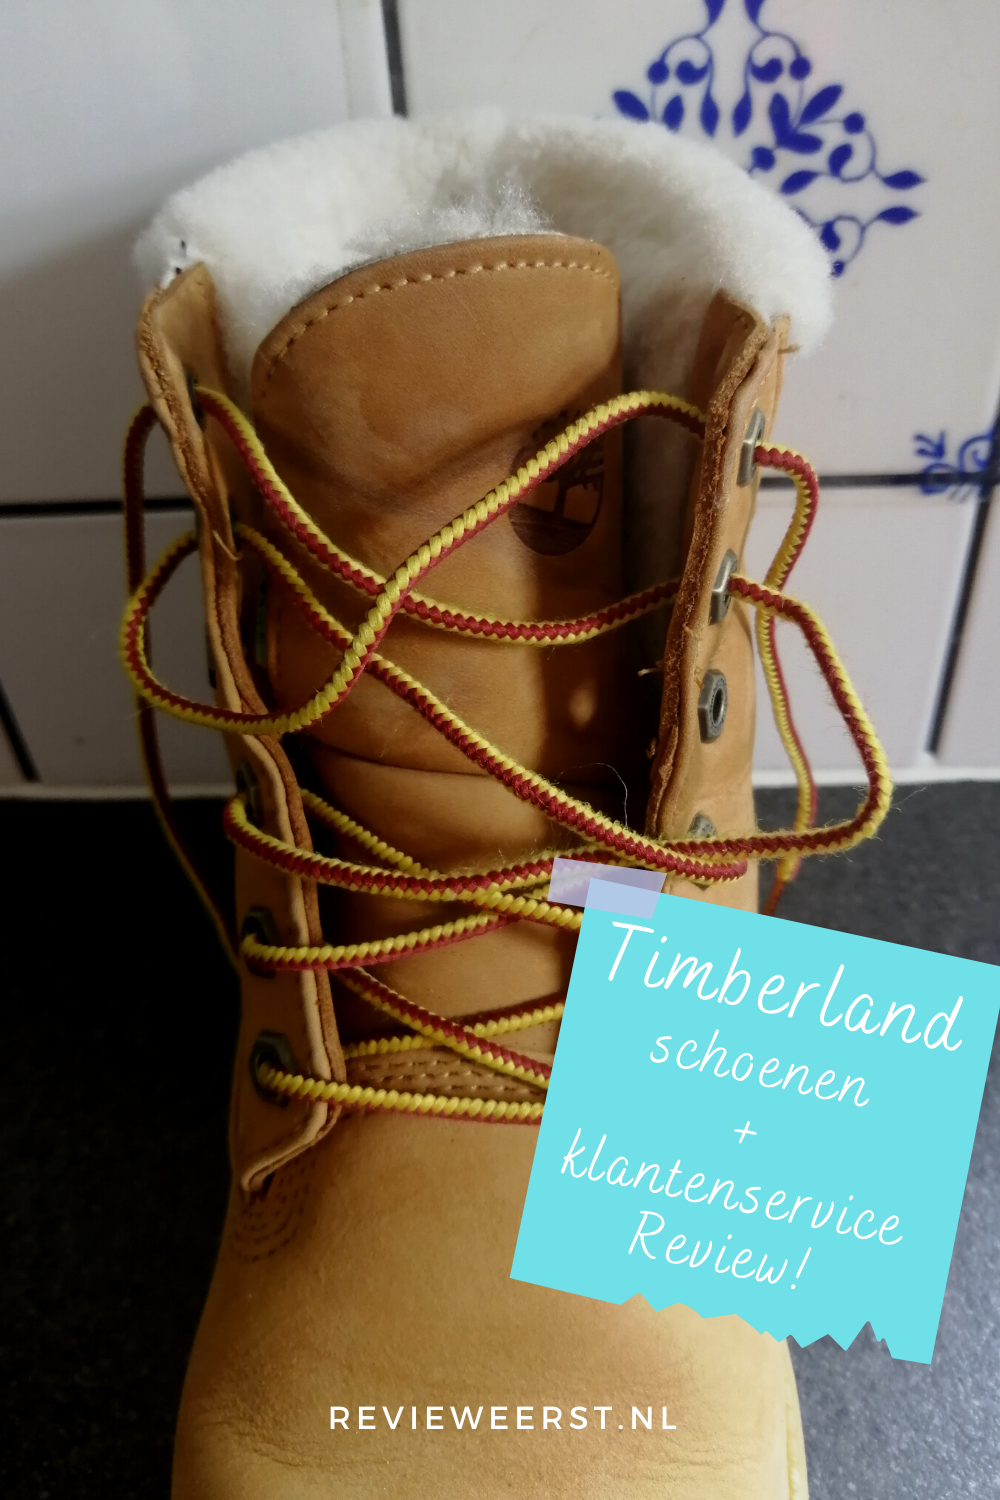 vogel bijwoord blootstelling Timberland schoenen + klantenservice review | Review Eerst